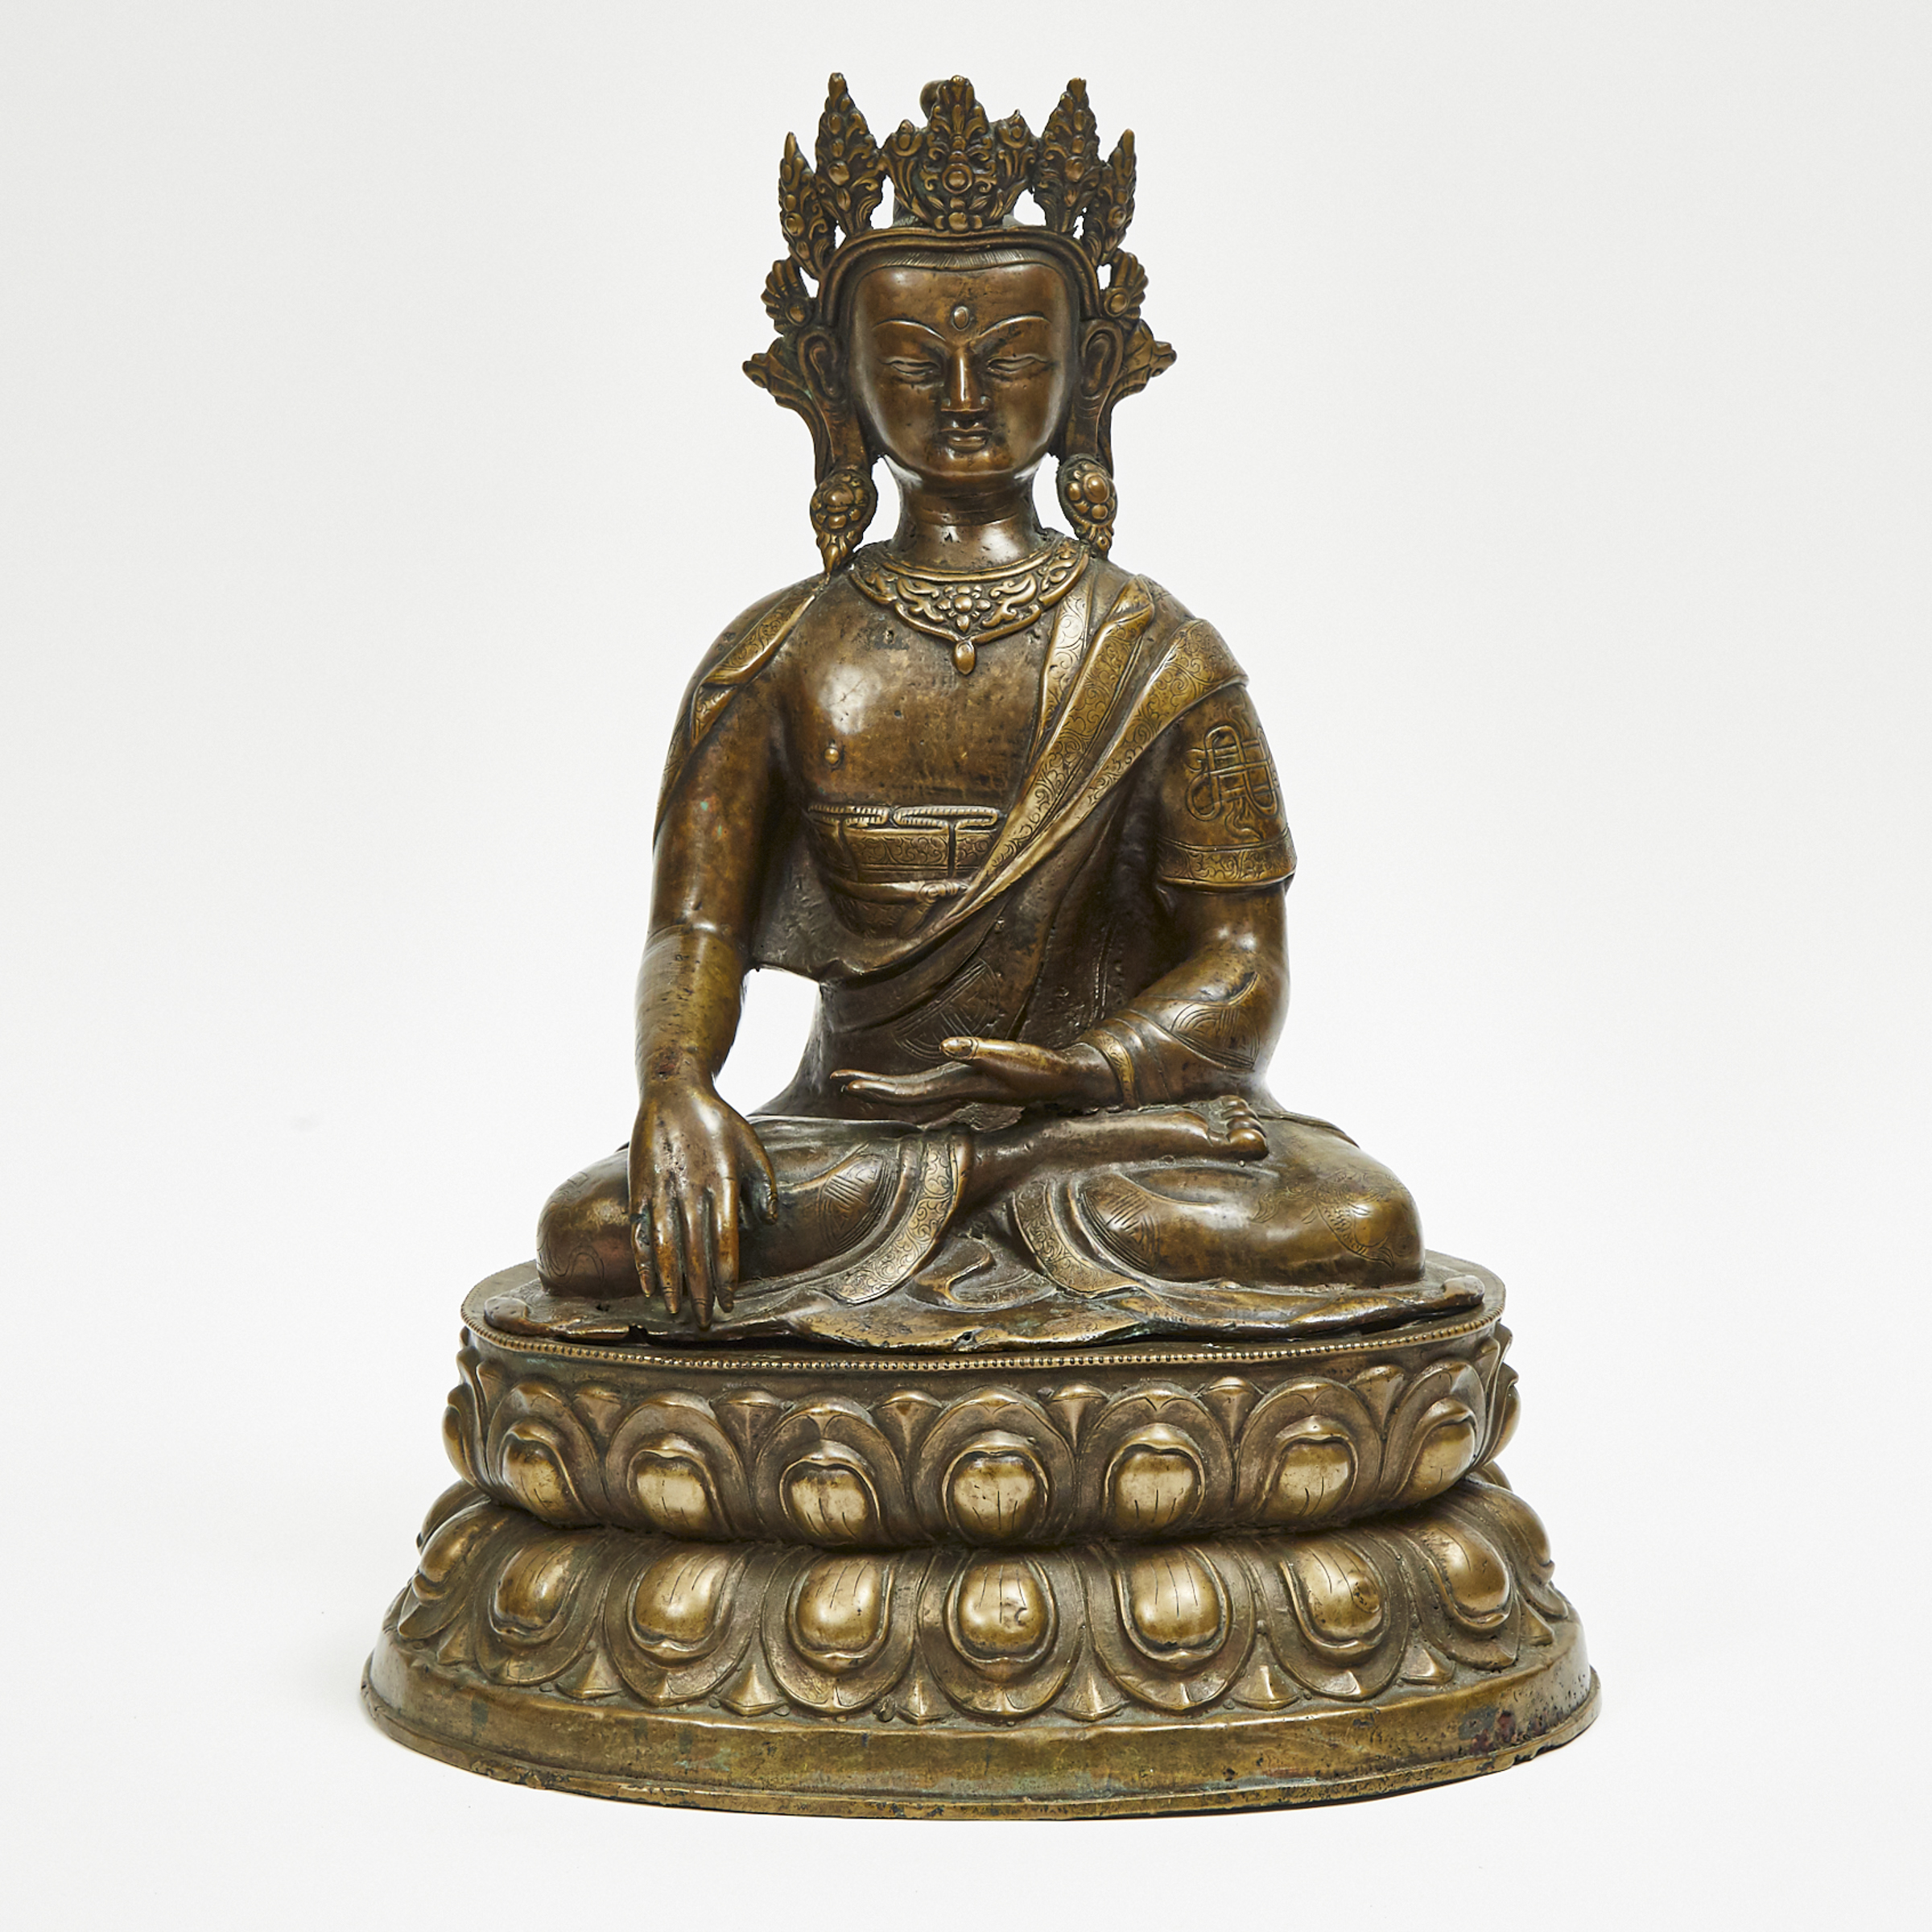 A Bronze Seated Figure of Buddha Akshobhya, Tibet